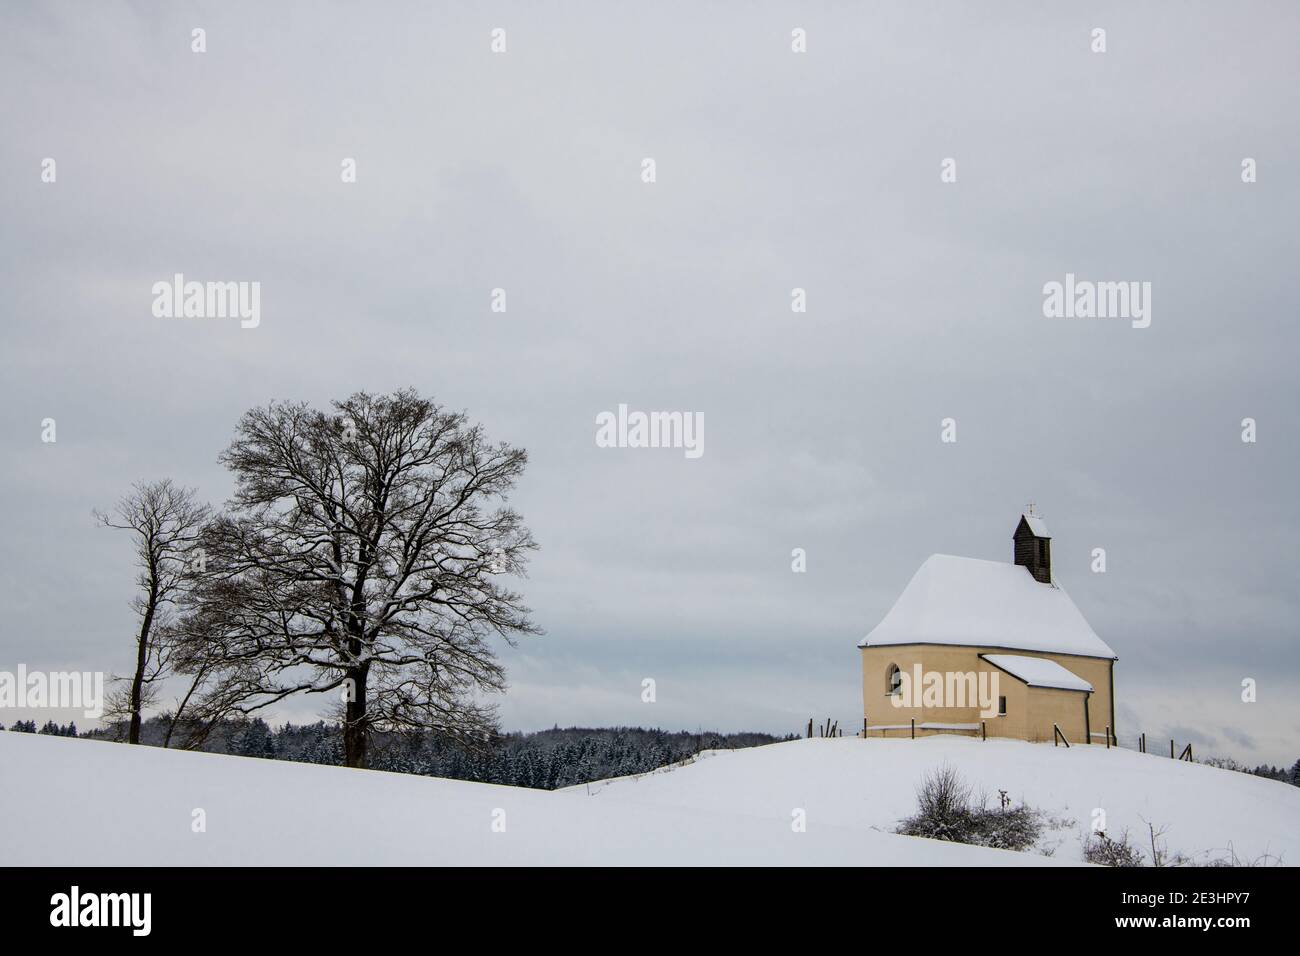 En plein air, l'hiver est pittoresque par temps froid et neige Europe centrale Banque D'Images